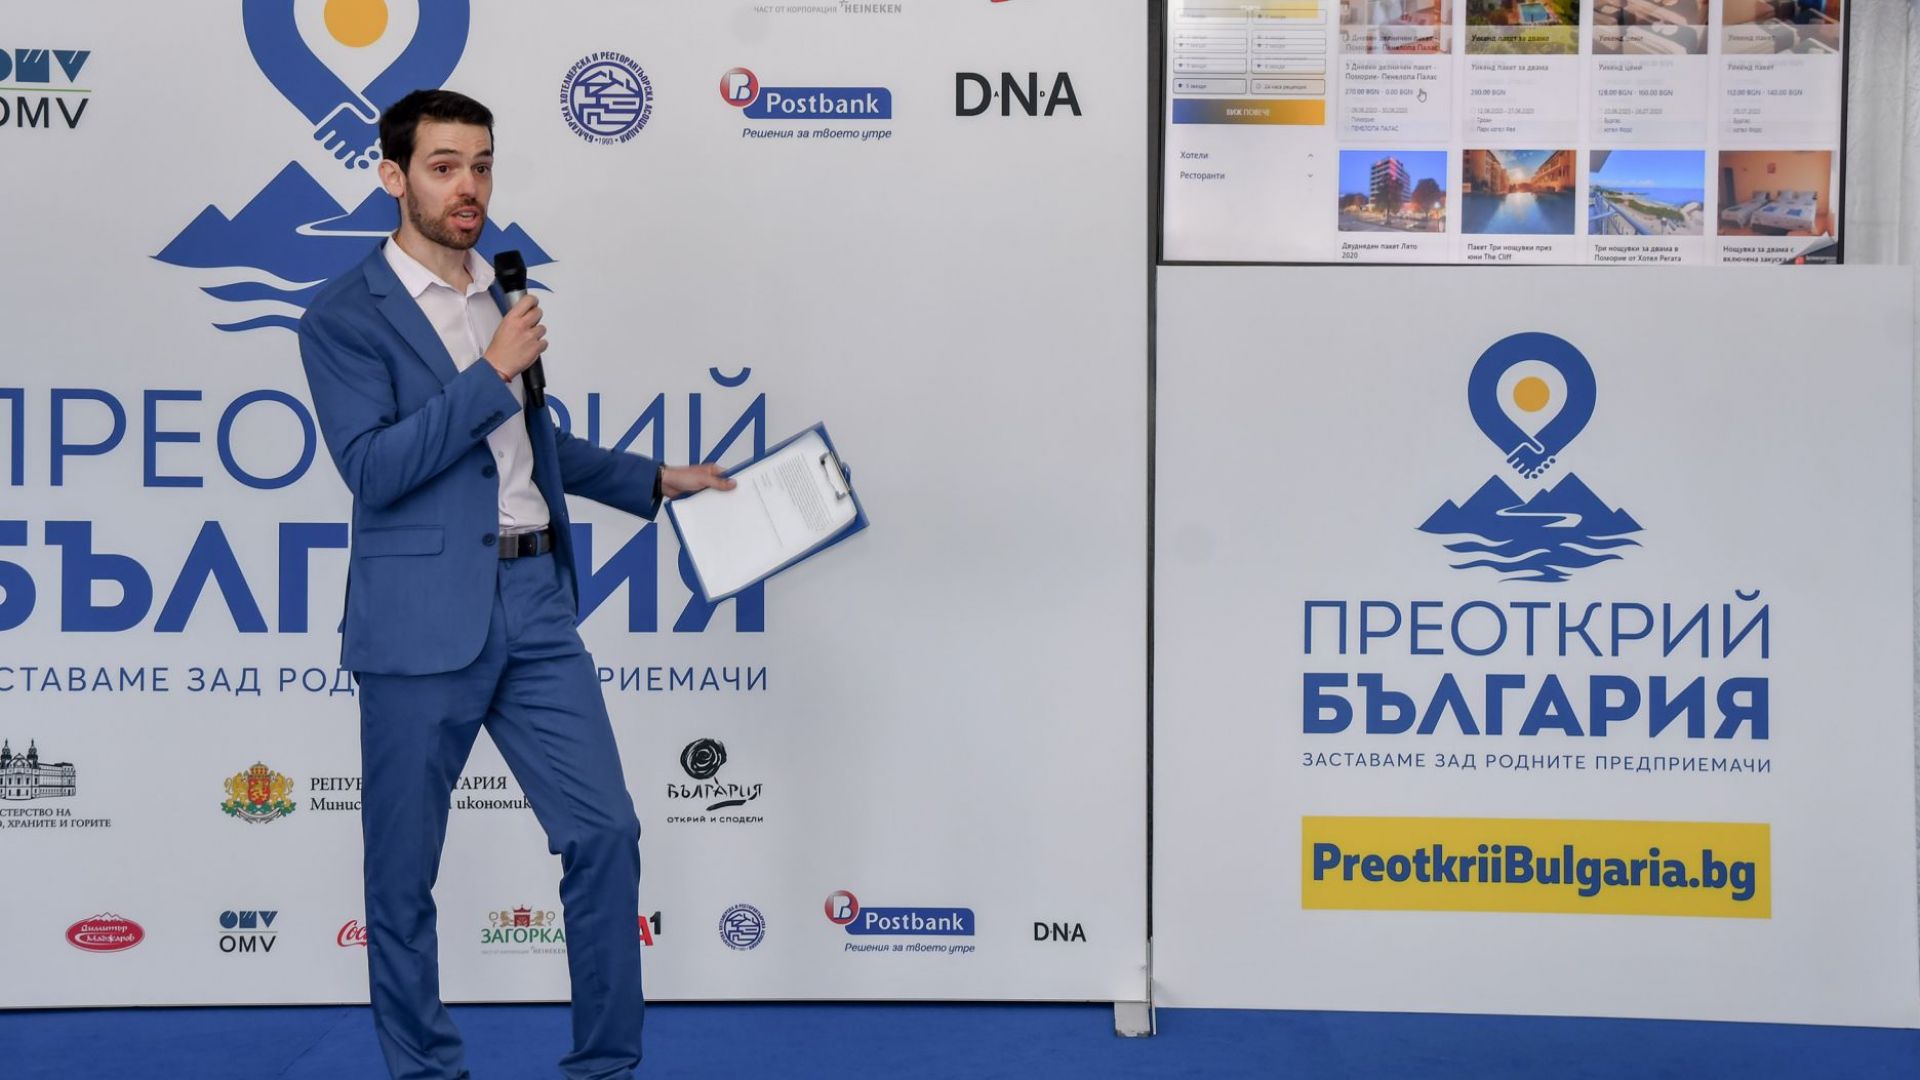 Венелин Иванов, ръководител сектор Електронна търговия МЕТРО, представя възможностите на платформата за резервации  „Преоткрий България“